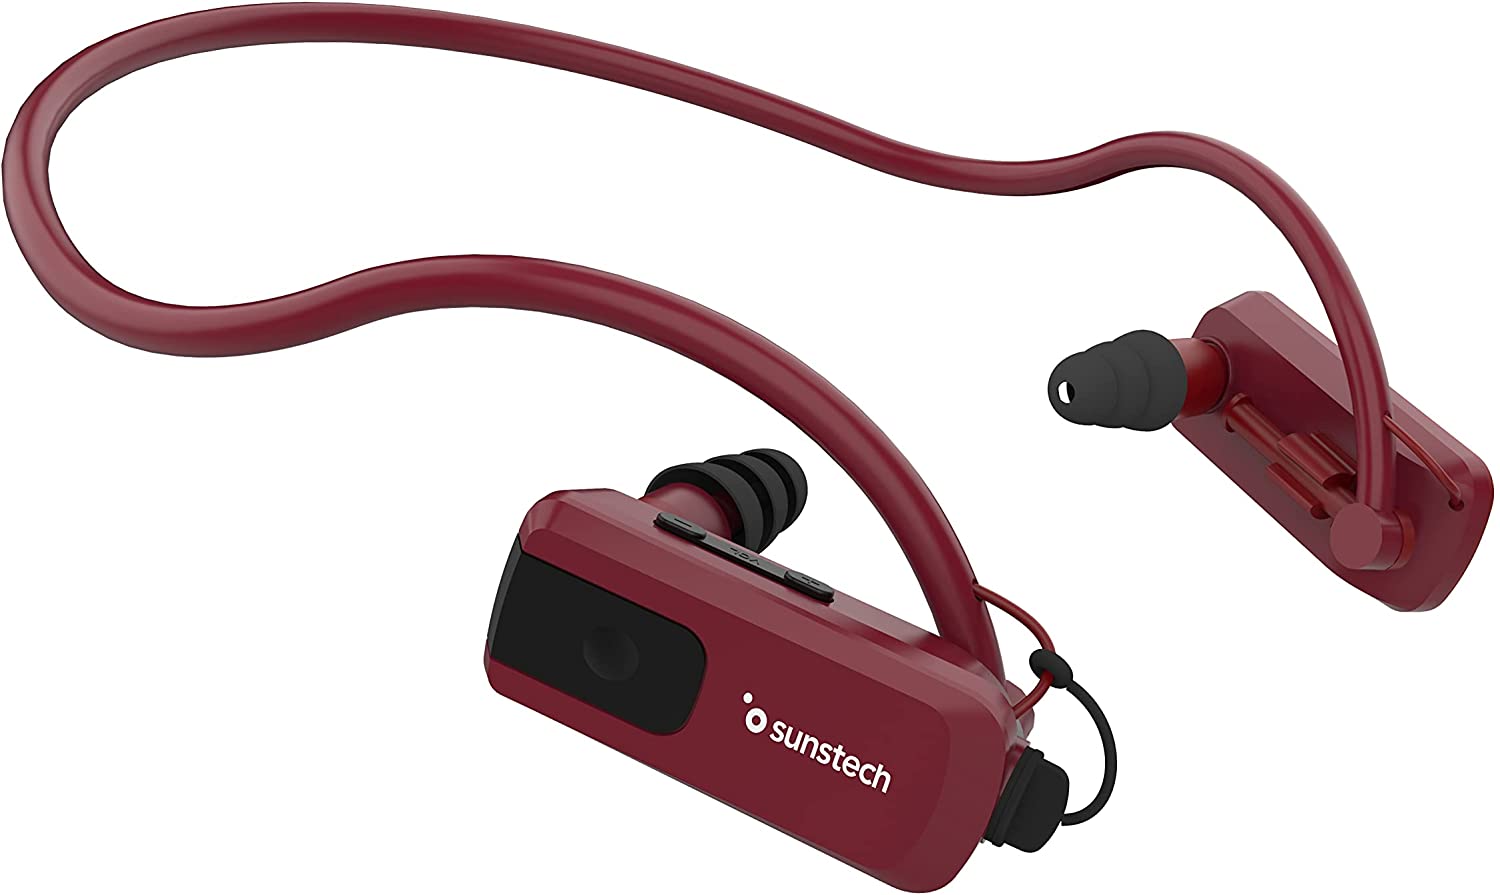 5 auriculares sumergibles perfectos para tus sesiones de natación